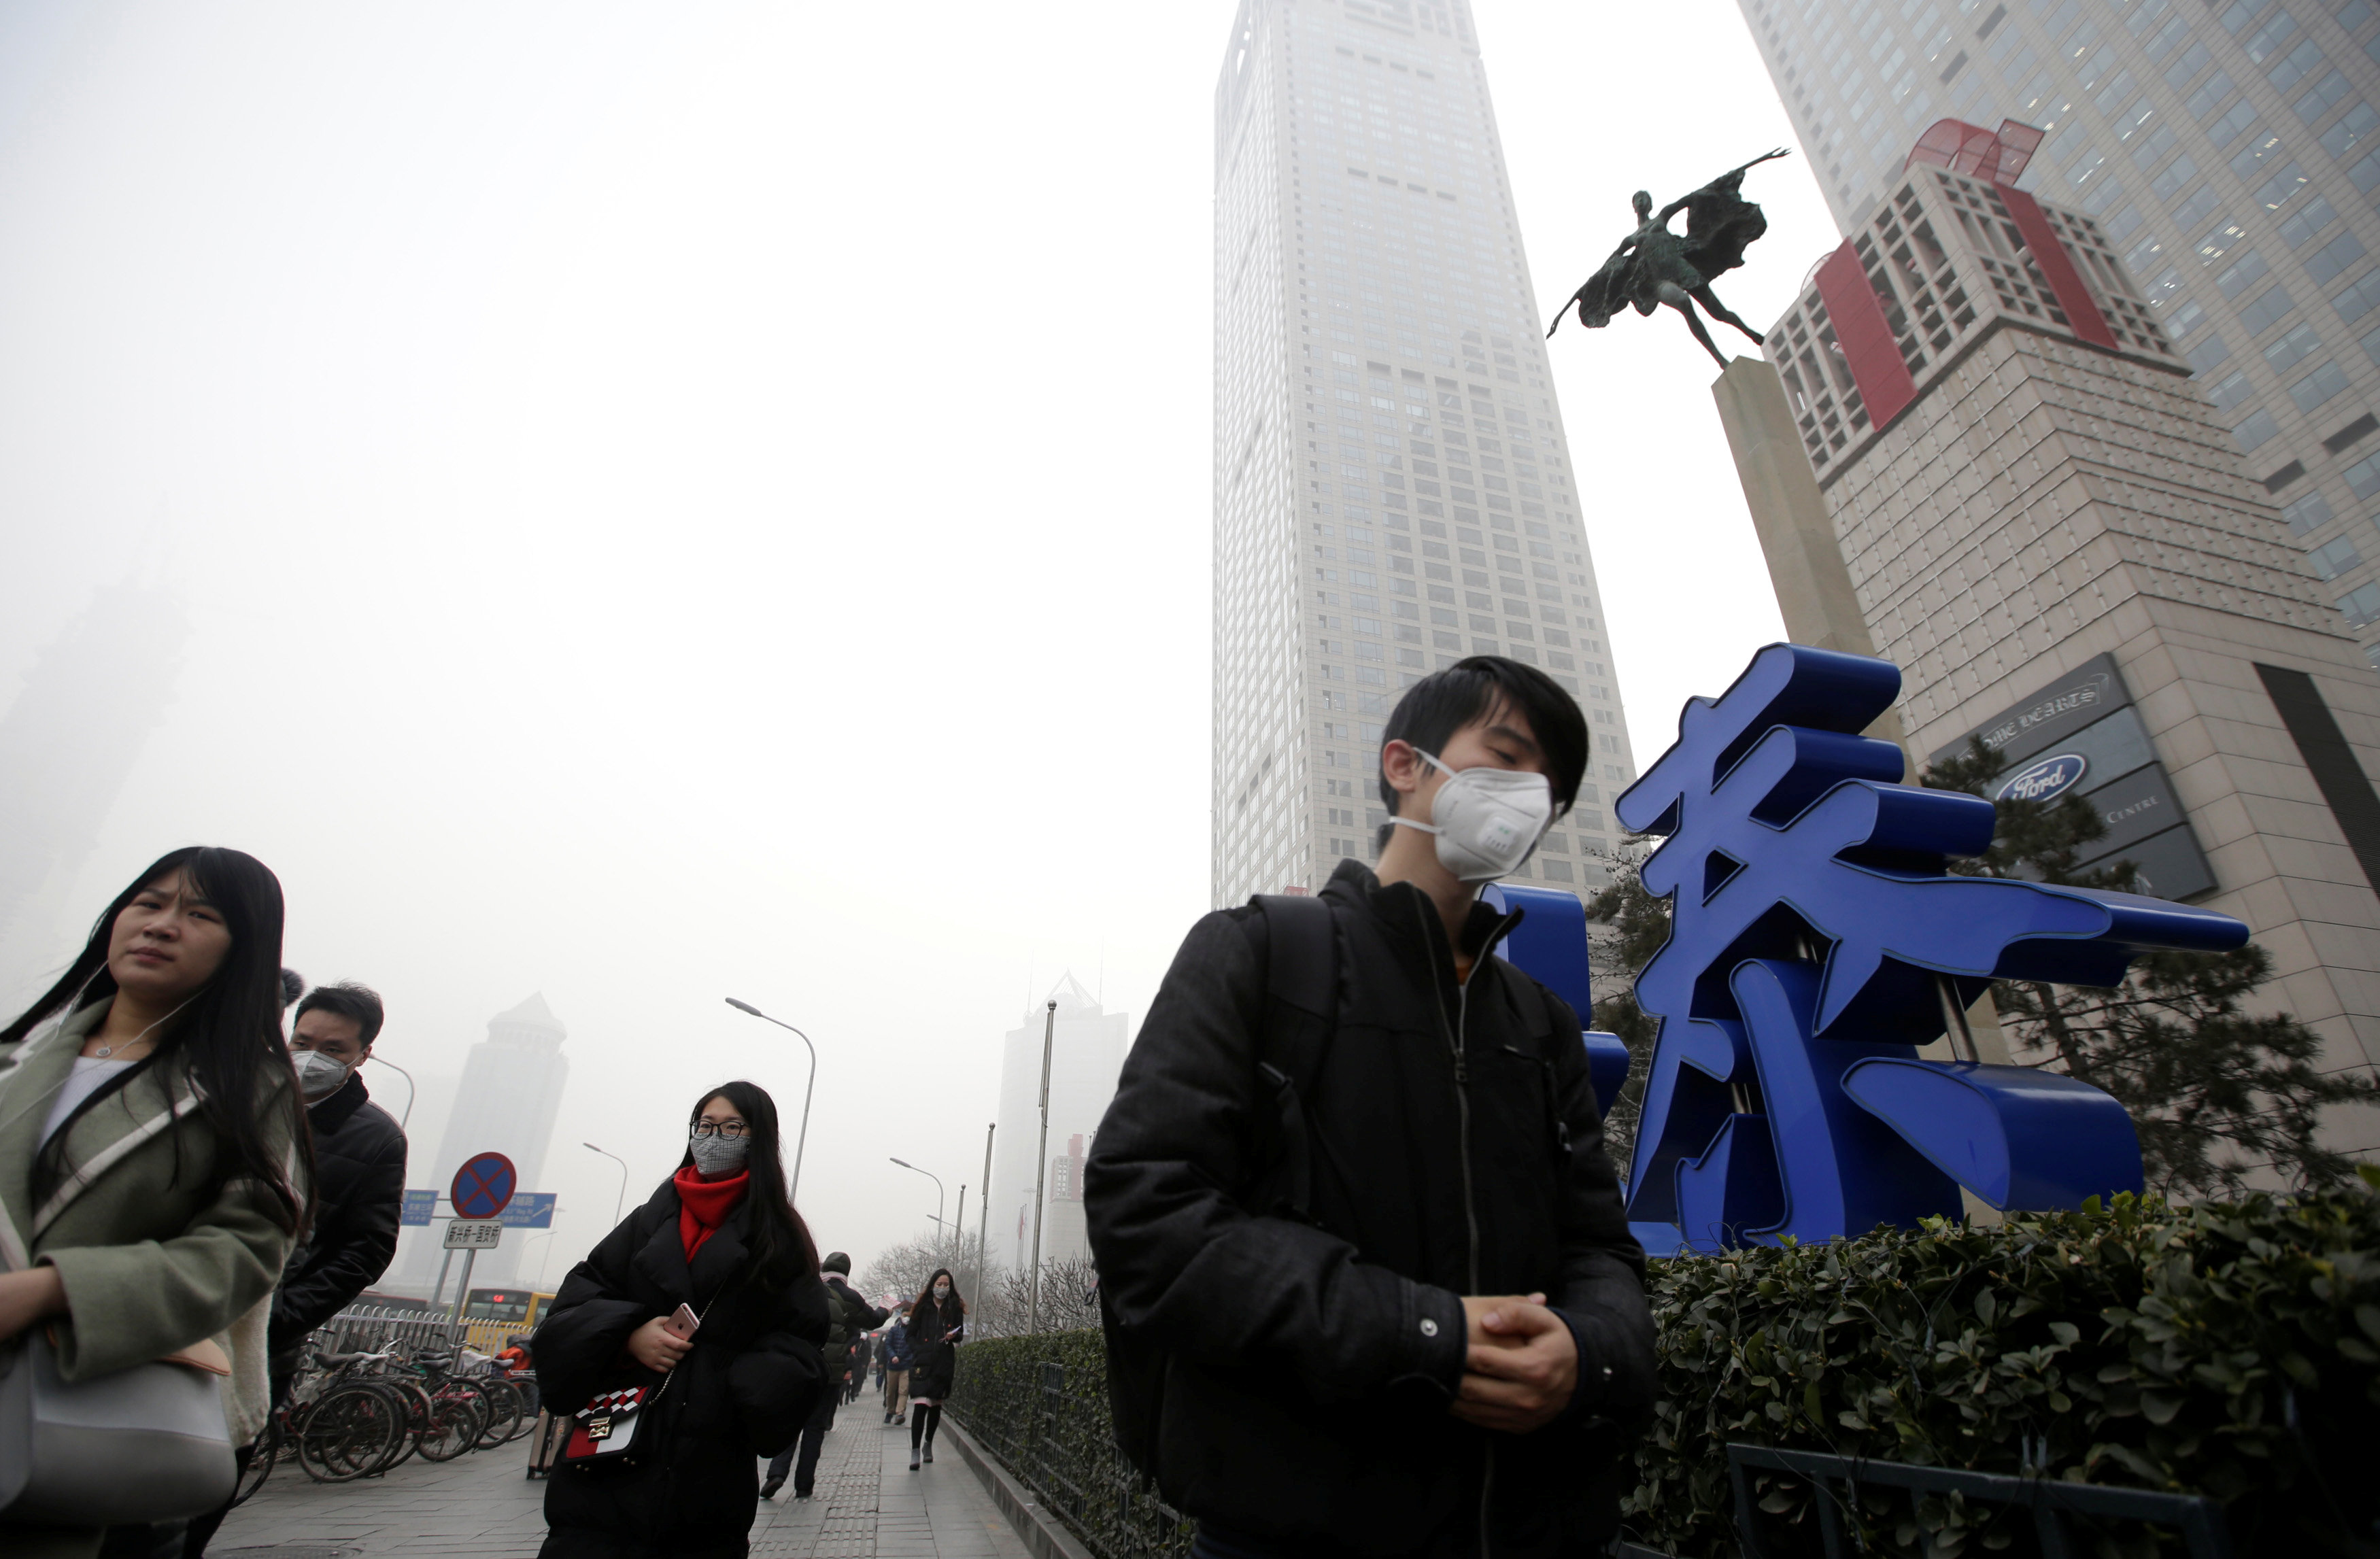 صينيون يرتدون كمامات للحماية من التلوث الجوى اثناء ذاثناء سيرهم بالقرب من احد المراكز في بكين - رويترز